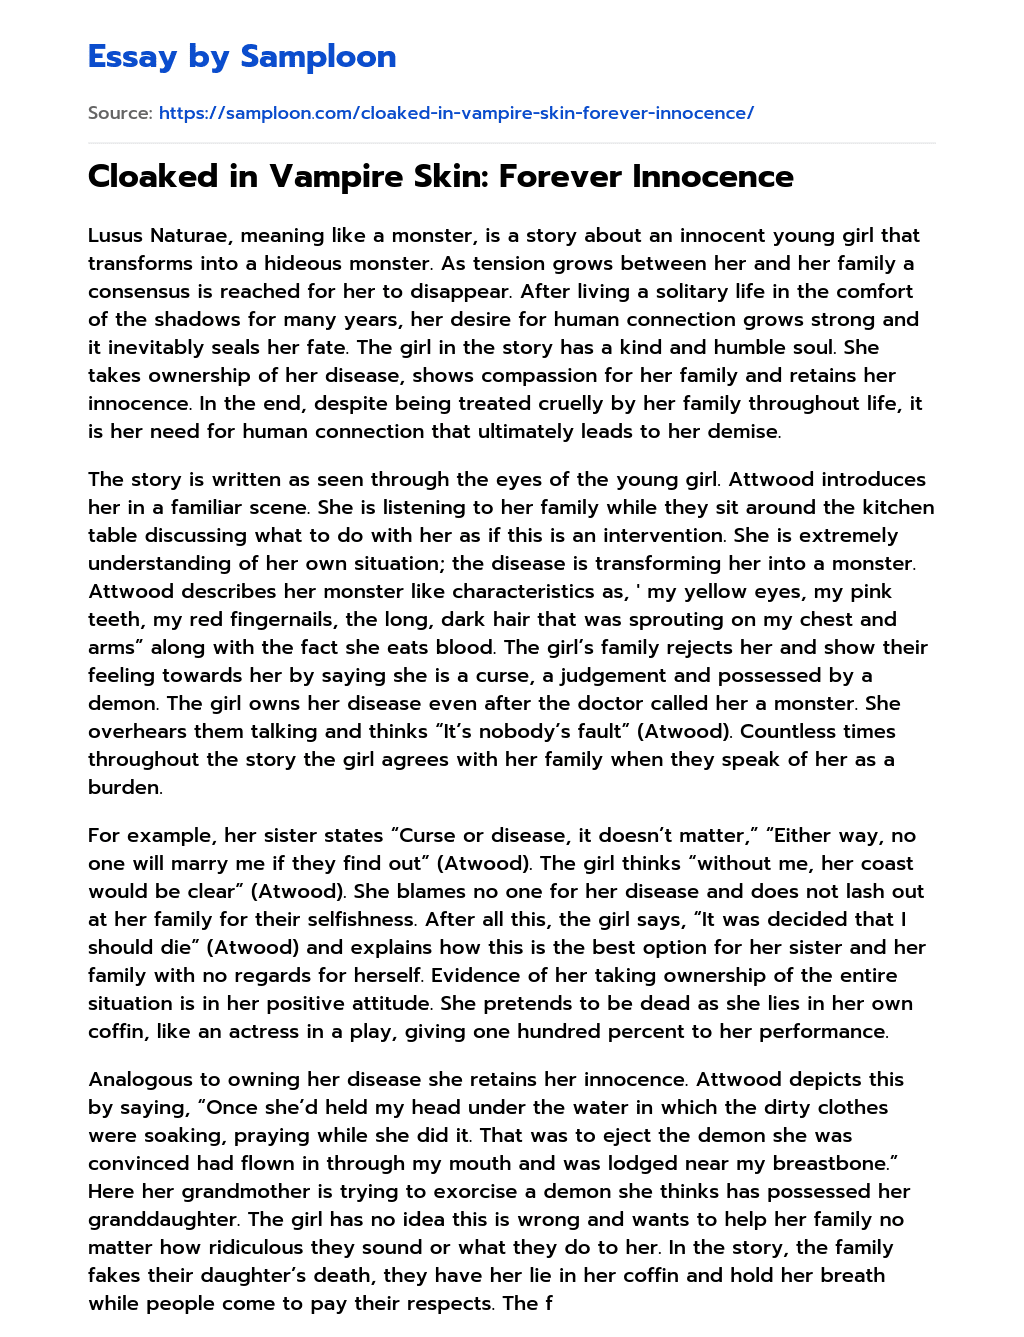 Cloaked in Vampire Skin: Forever Innocence essay